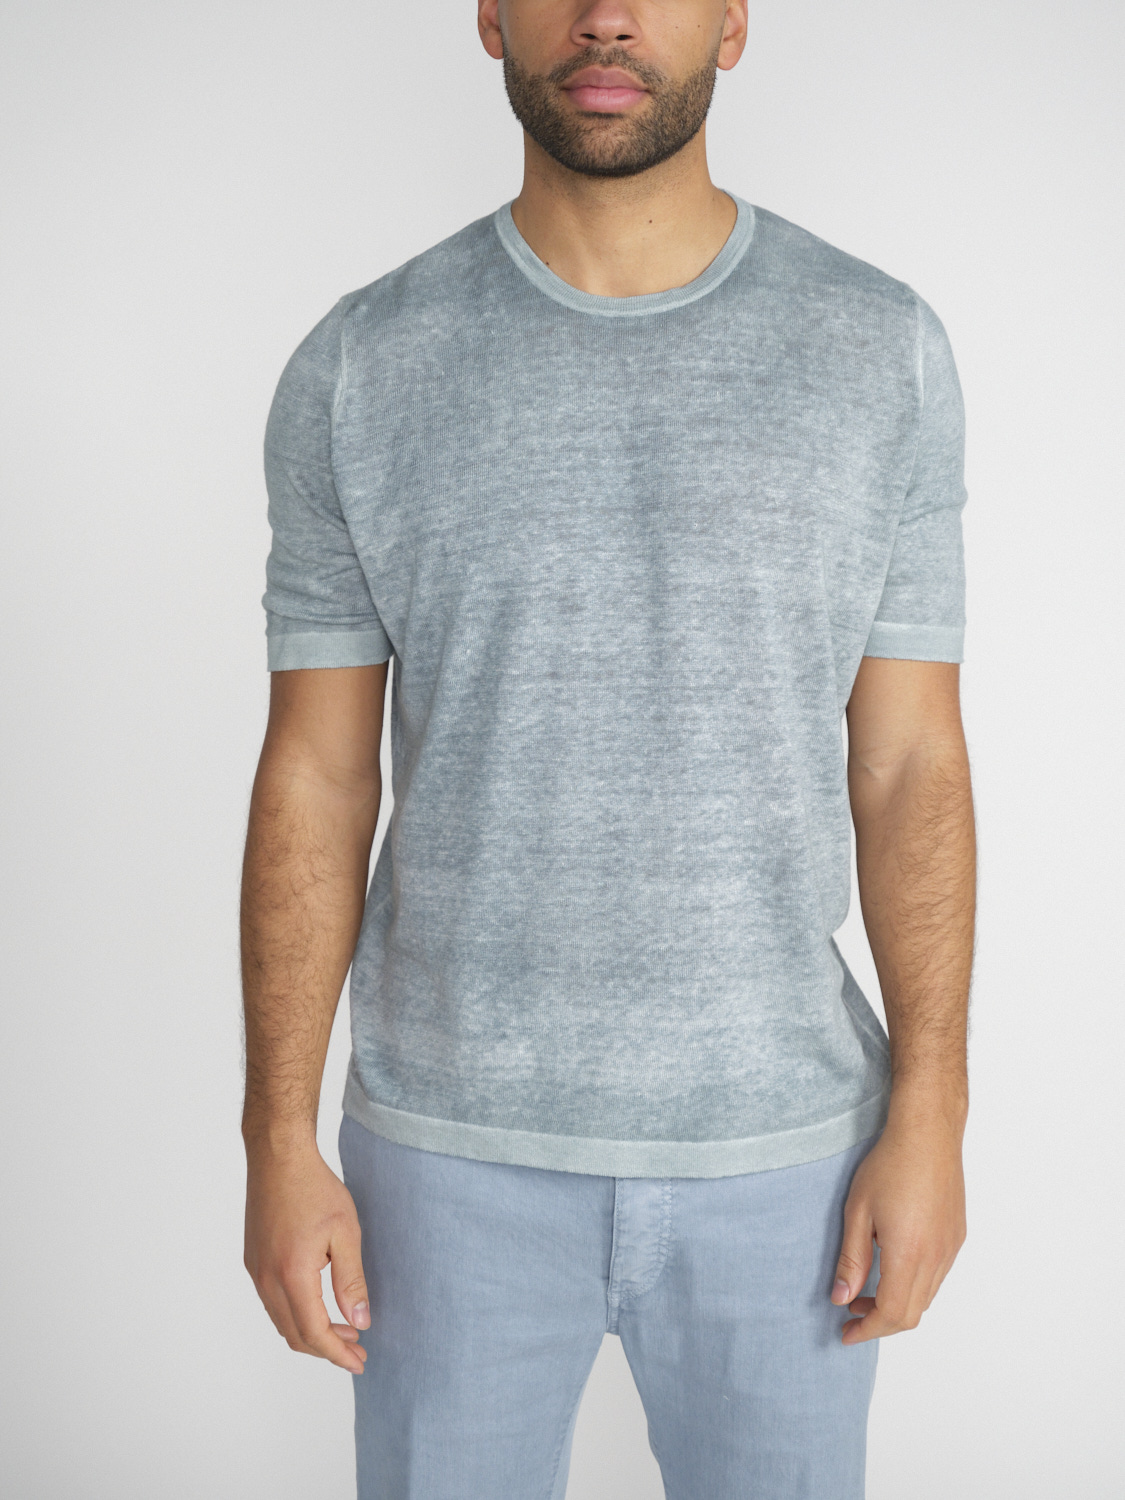 Avant Toi Short-sleeved shirt made from a linen-cotton mix  mint M